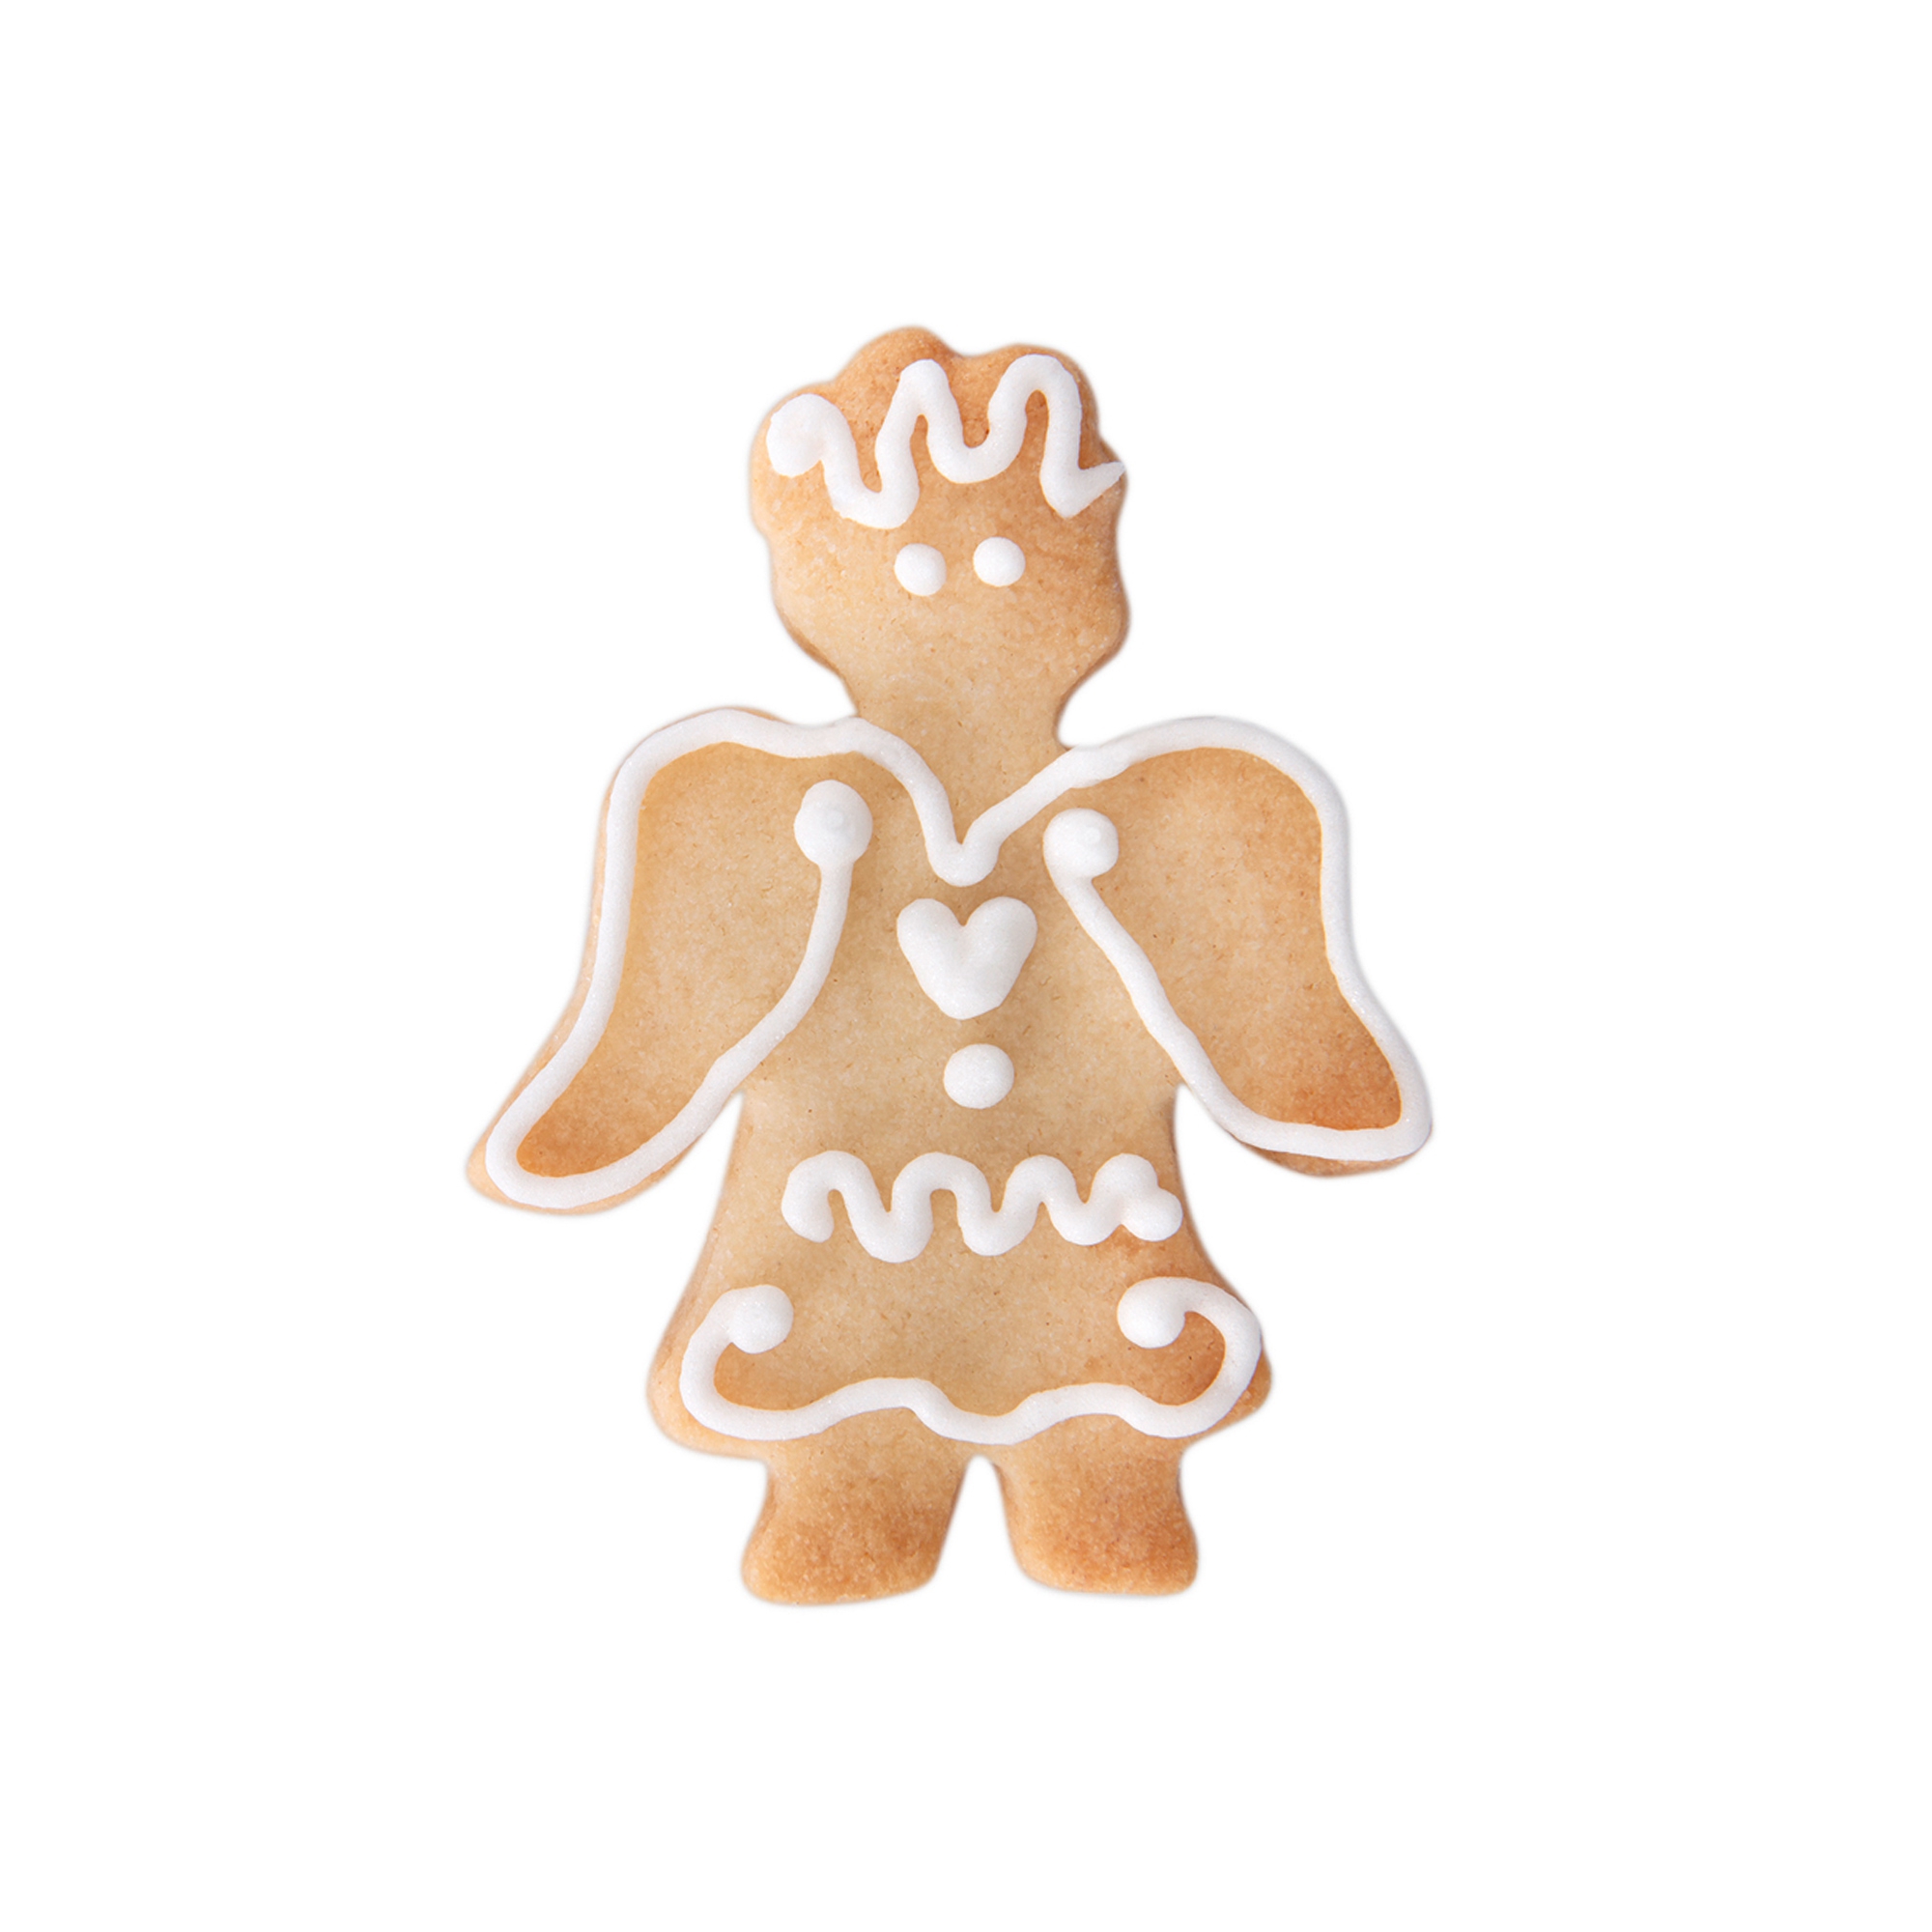 Städter - cookie cutter angel - 6cm